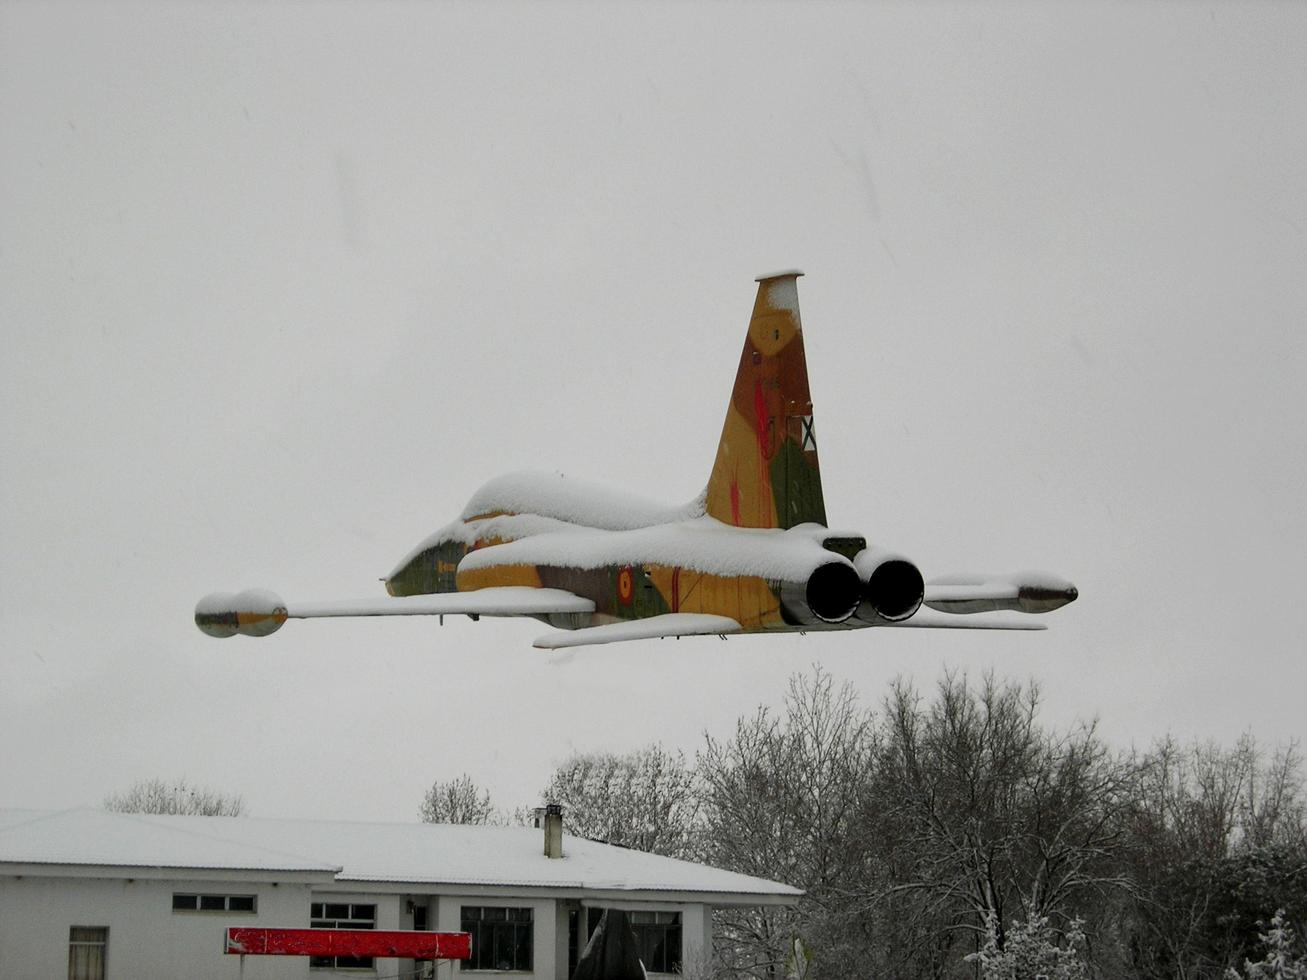 soria, spanien, 26. september 2021 - kriegsflugzeug fliegt an einem verschneiten tag foto